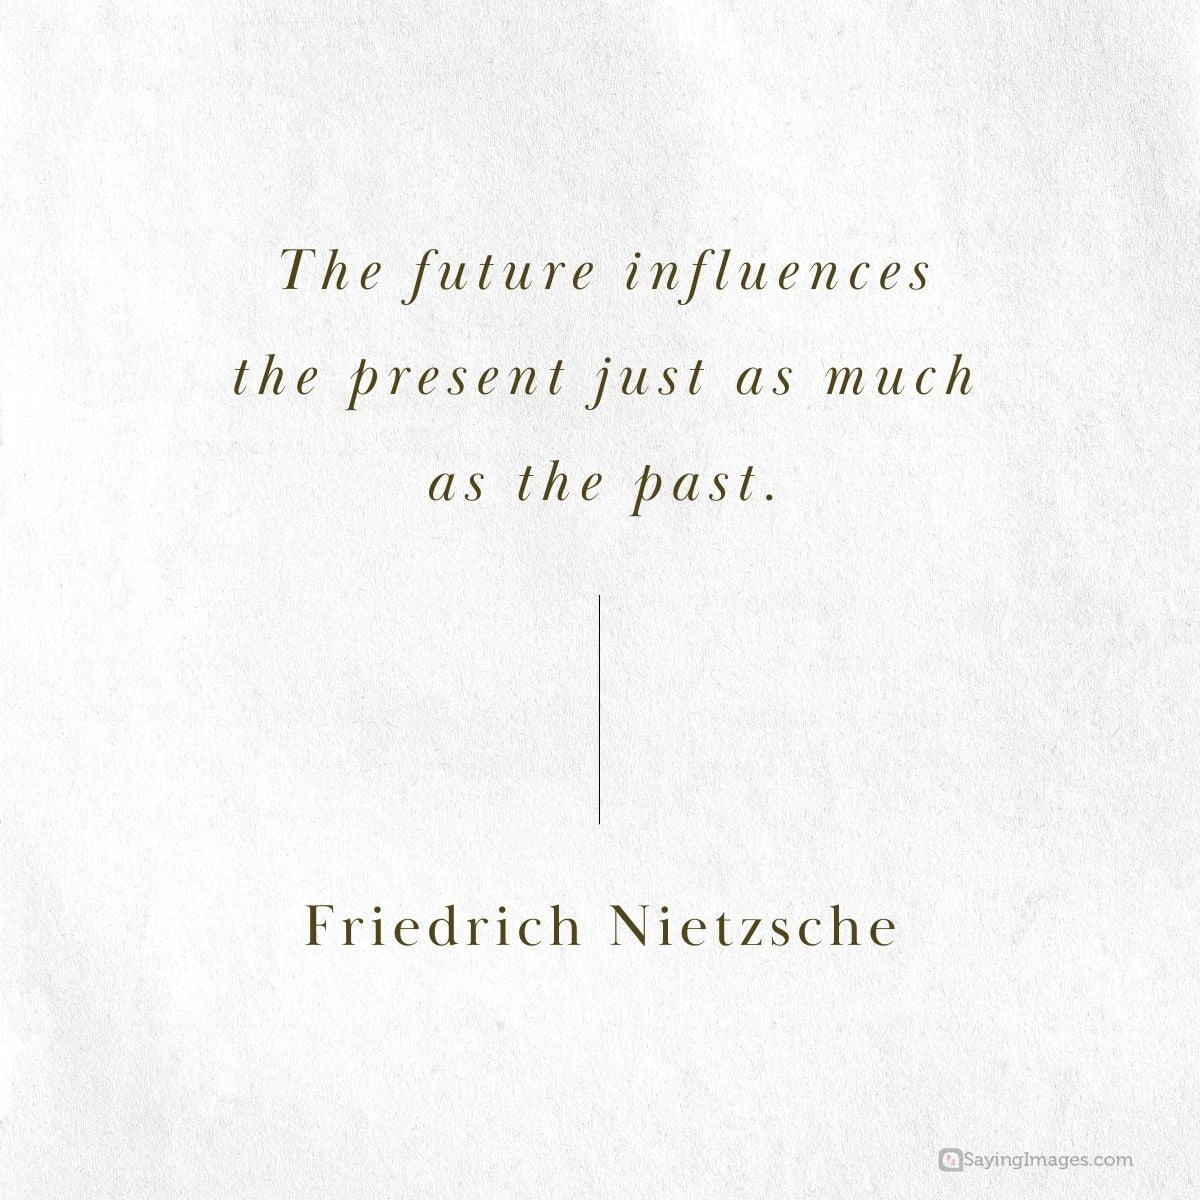 friedrich nietzsche influence quote